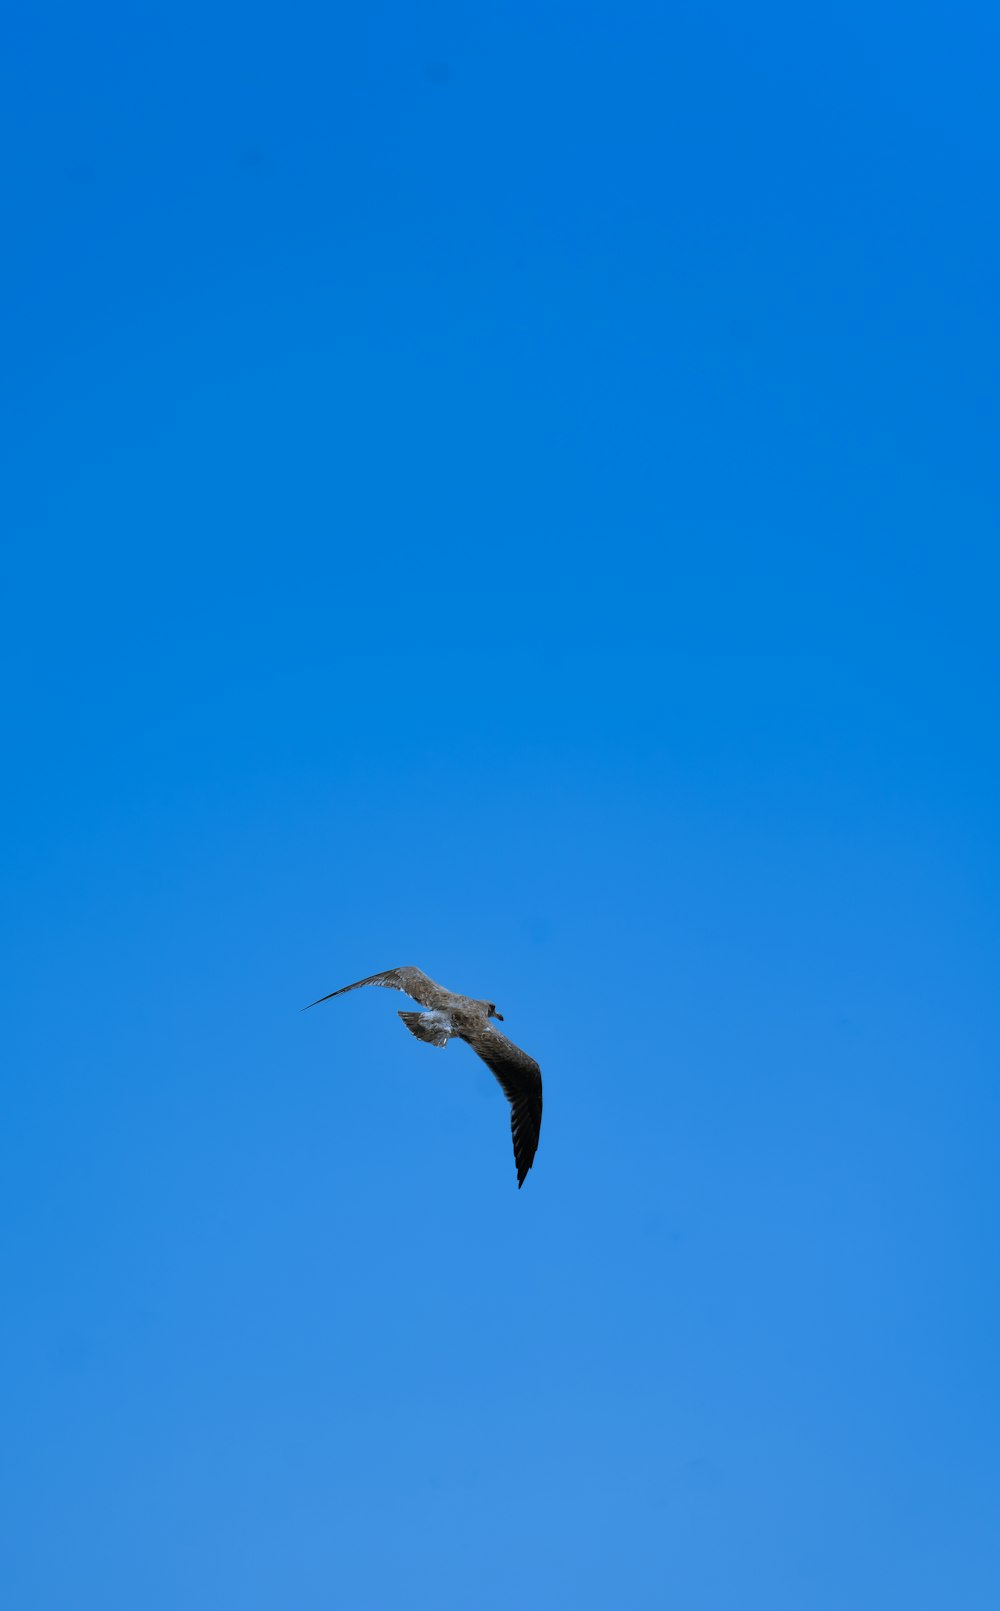 a bird flying through a blue sky on a sunny day